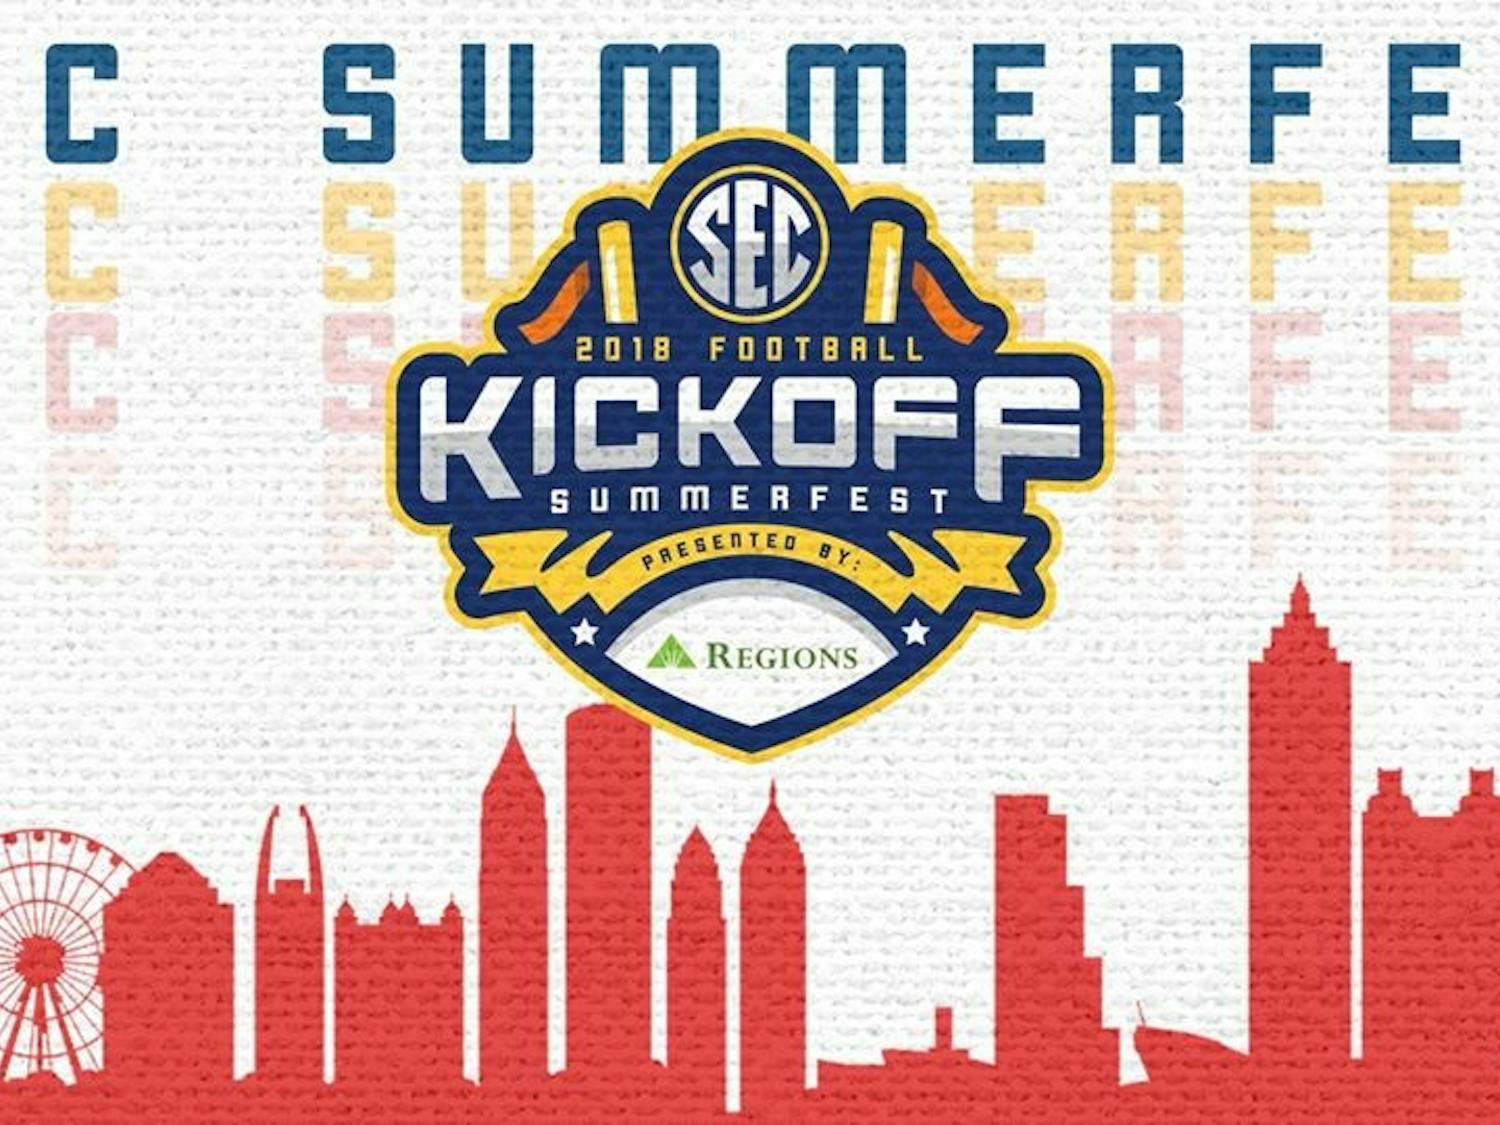 SEC Summerfest Kickoff